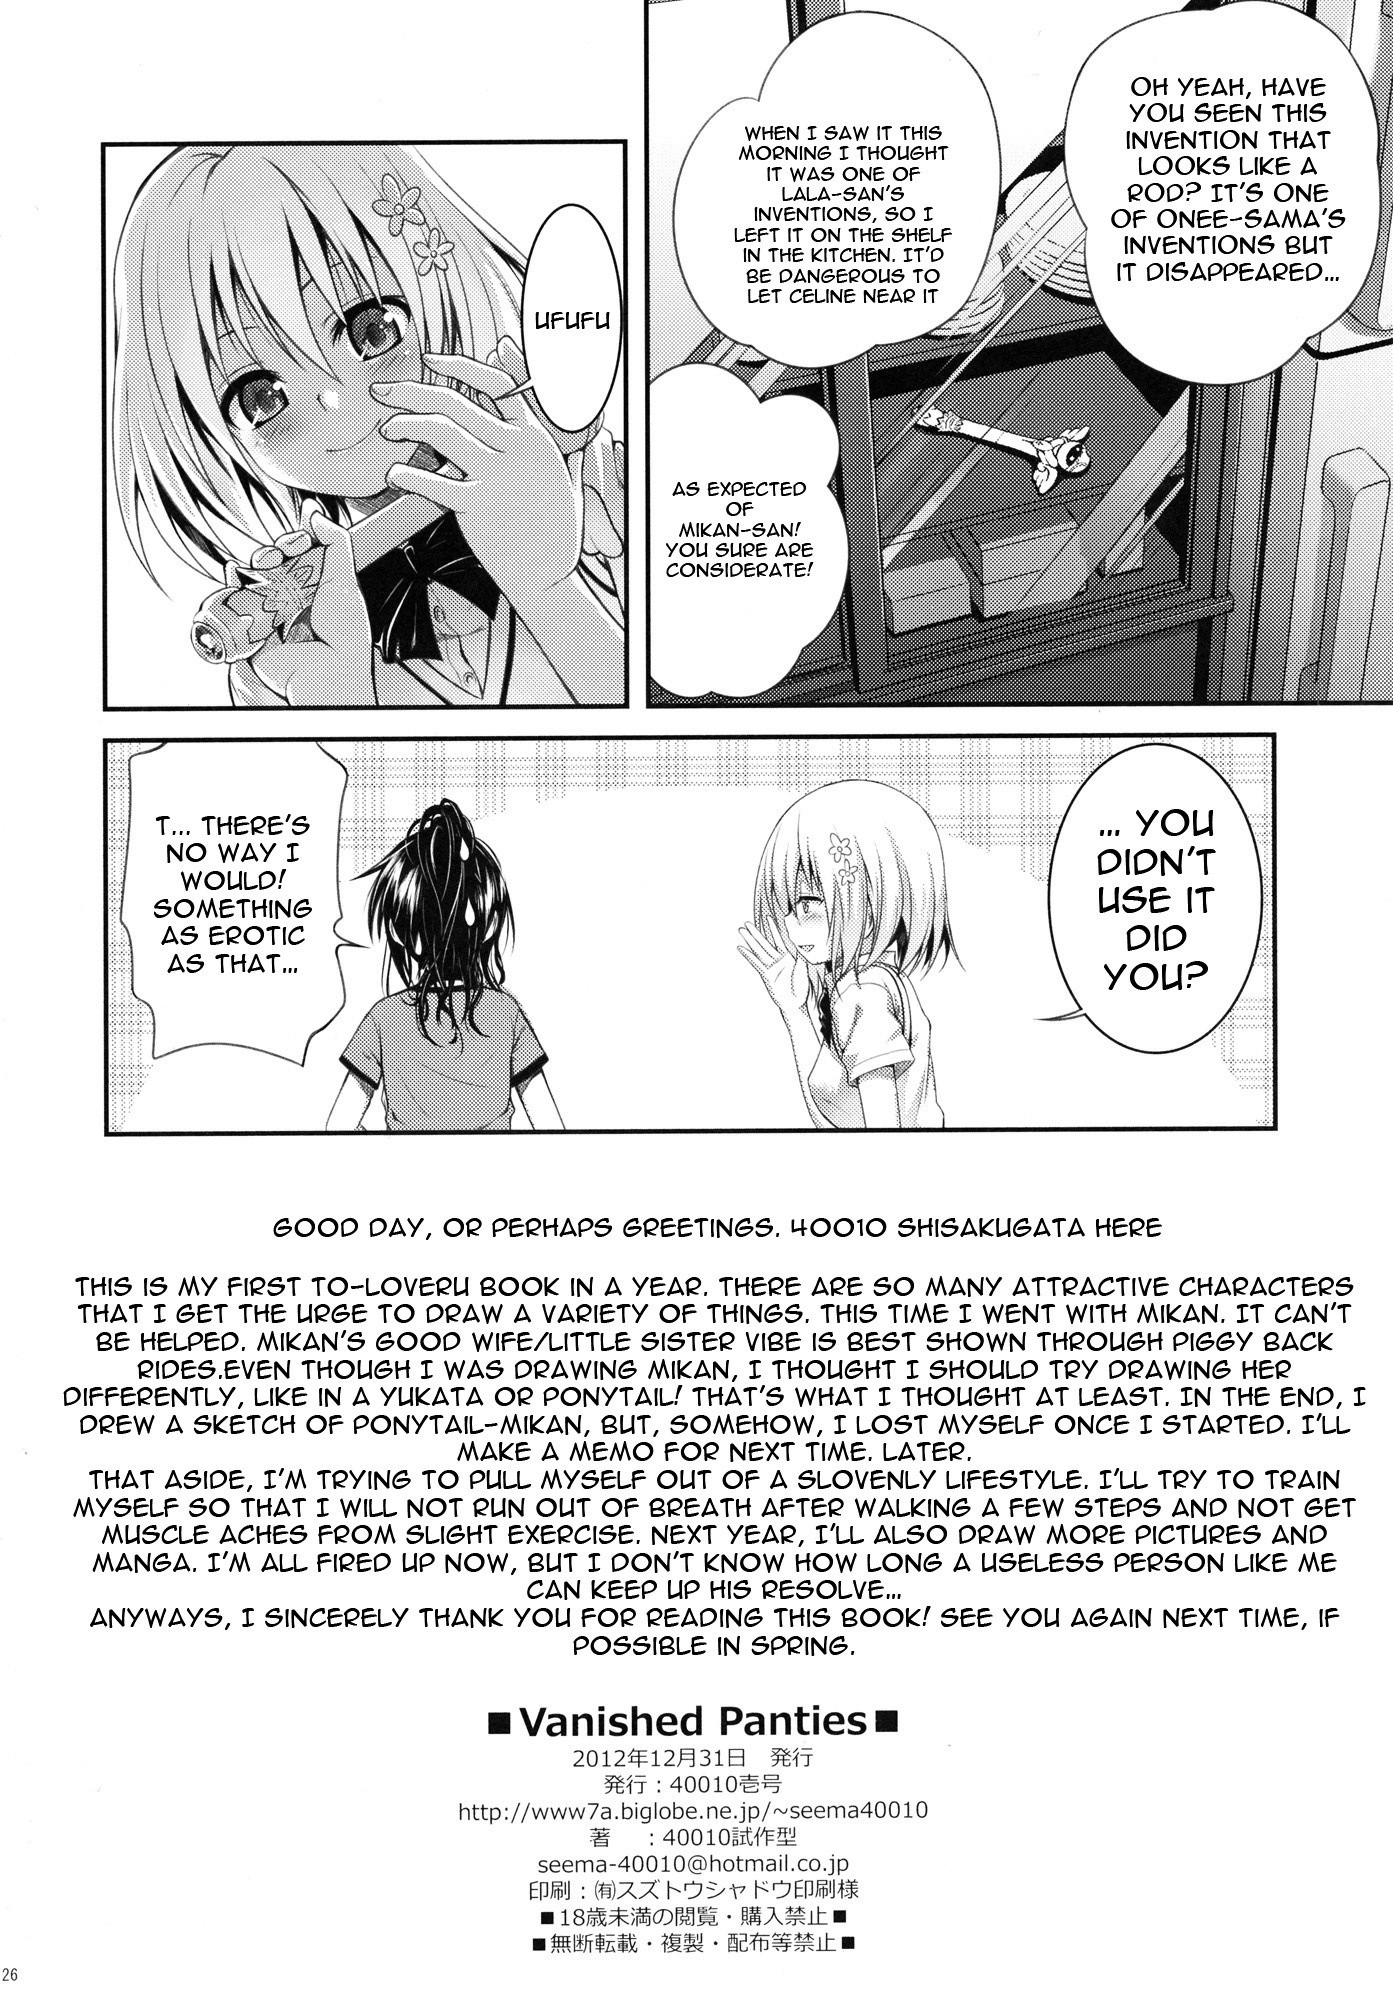 Vanished Panties hentai manga picture 25